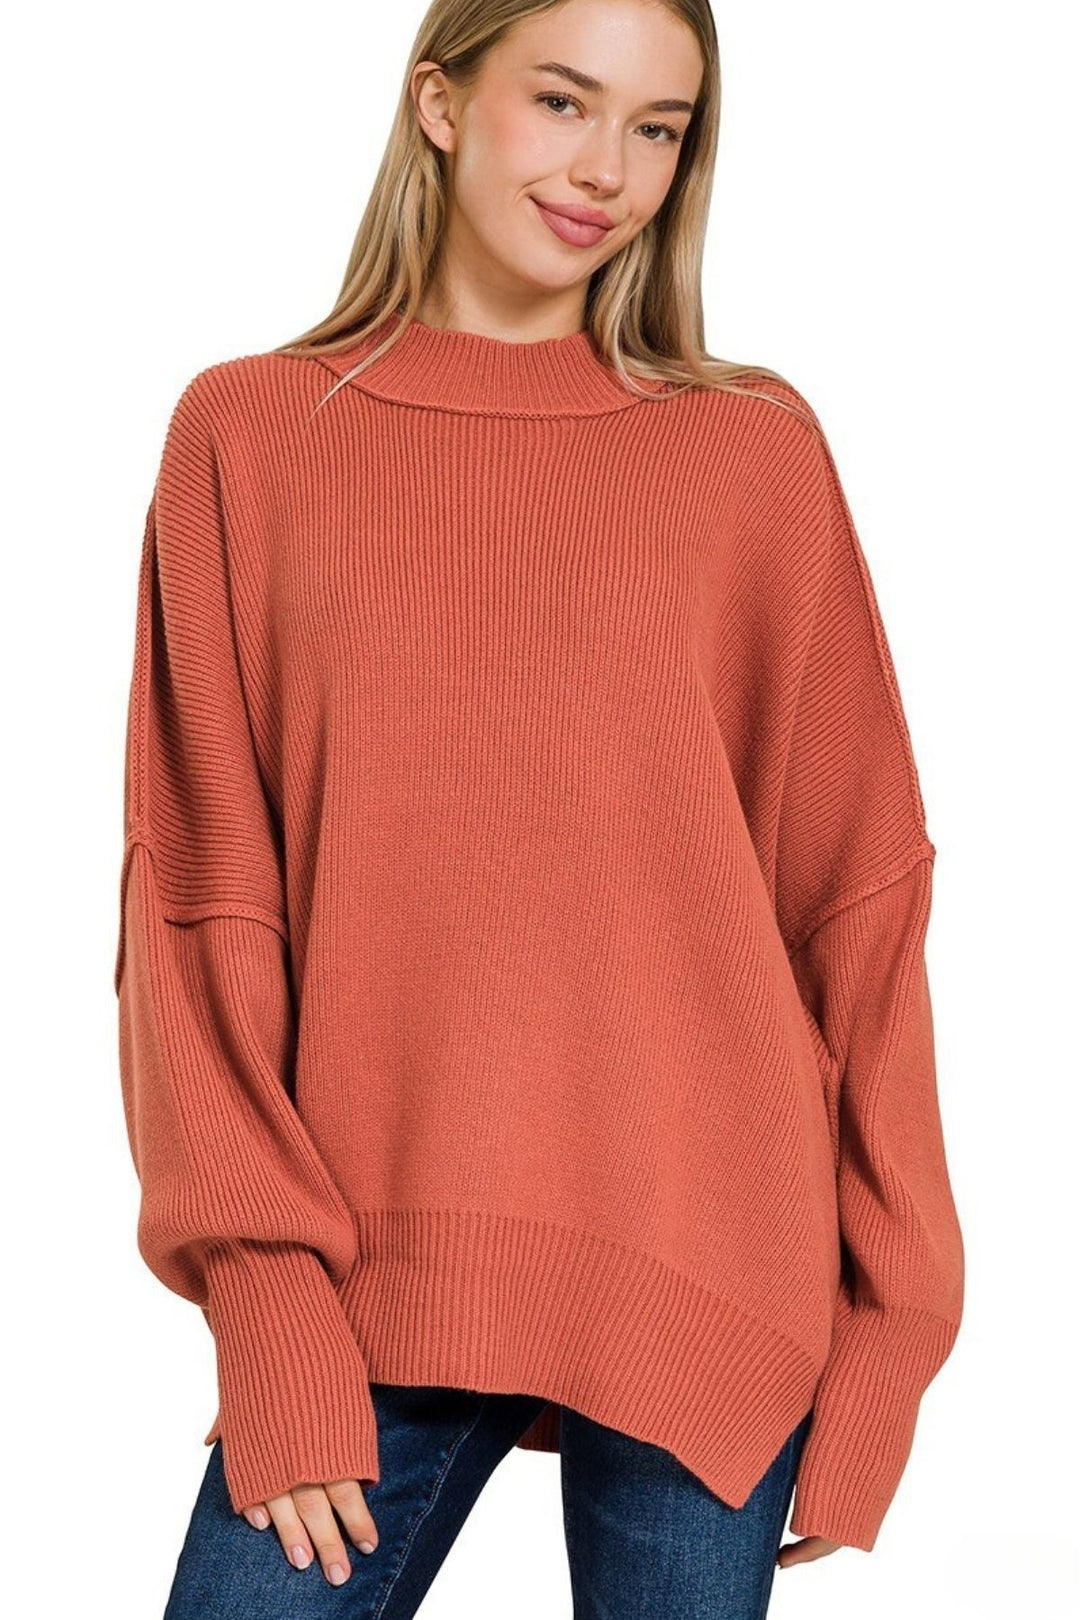 Zenana Oversized Side Slit Sweater - Inspired Eye Boutique